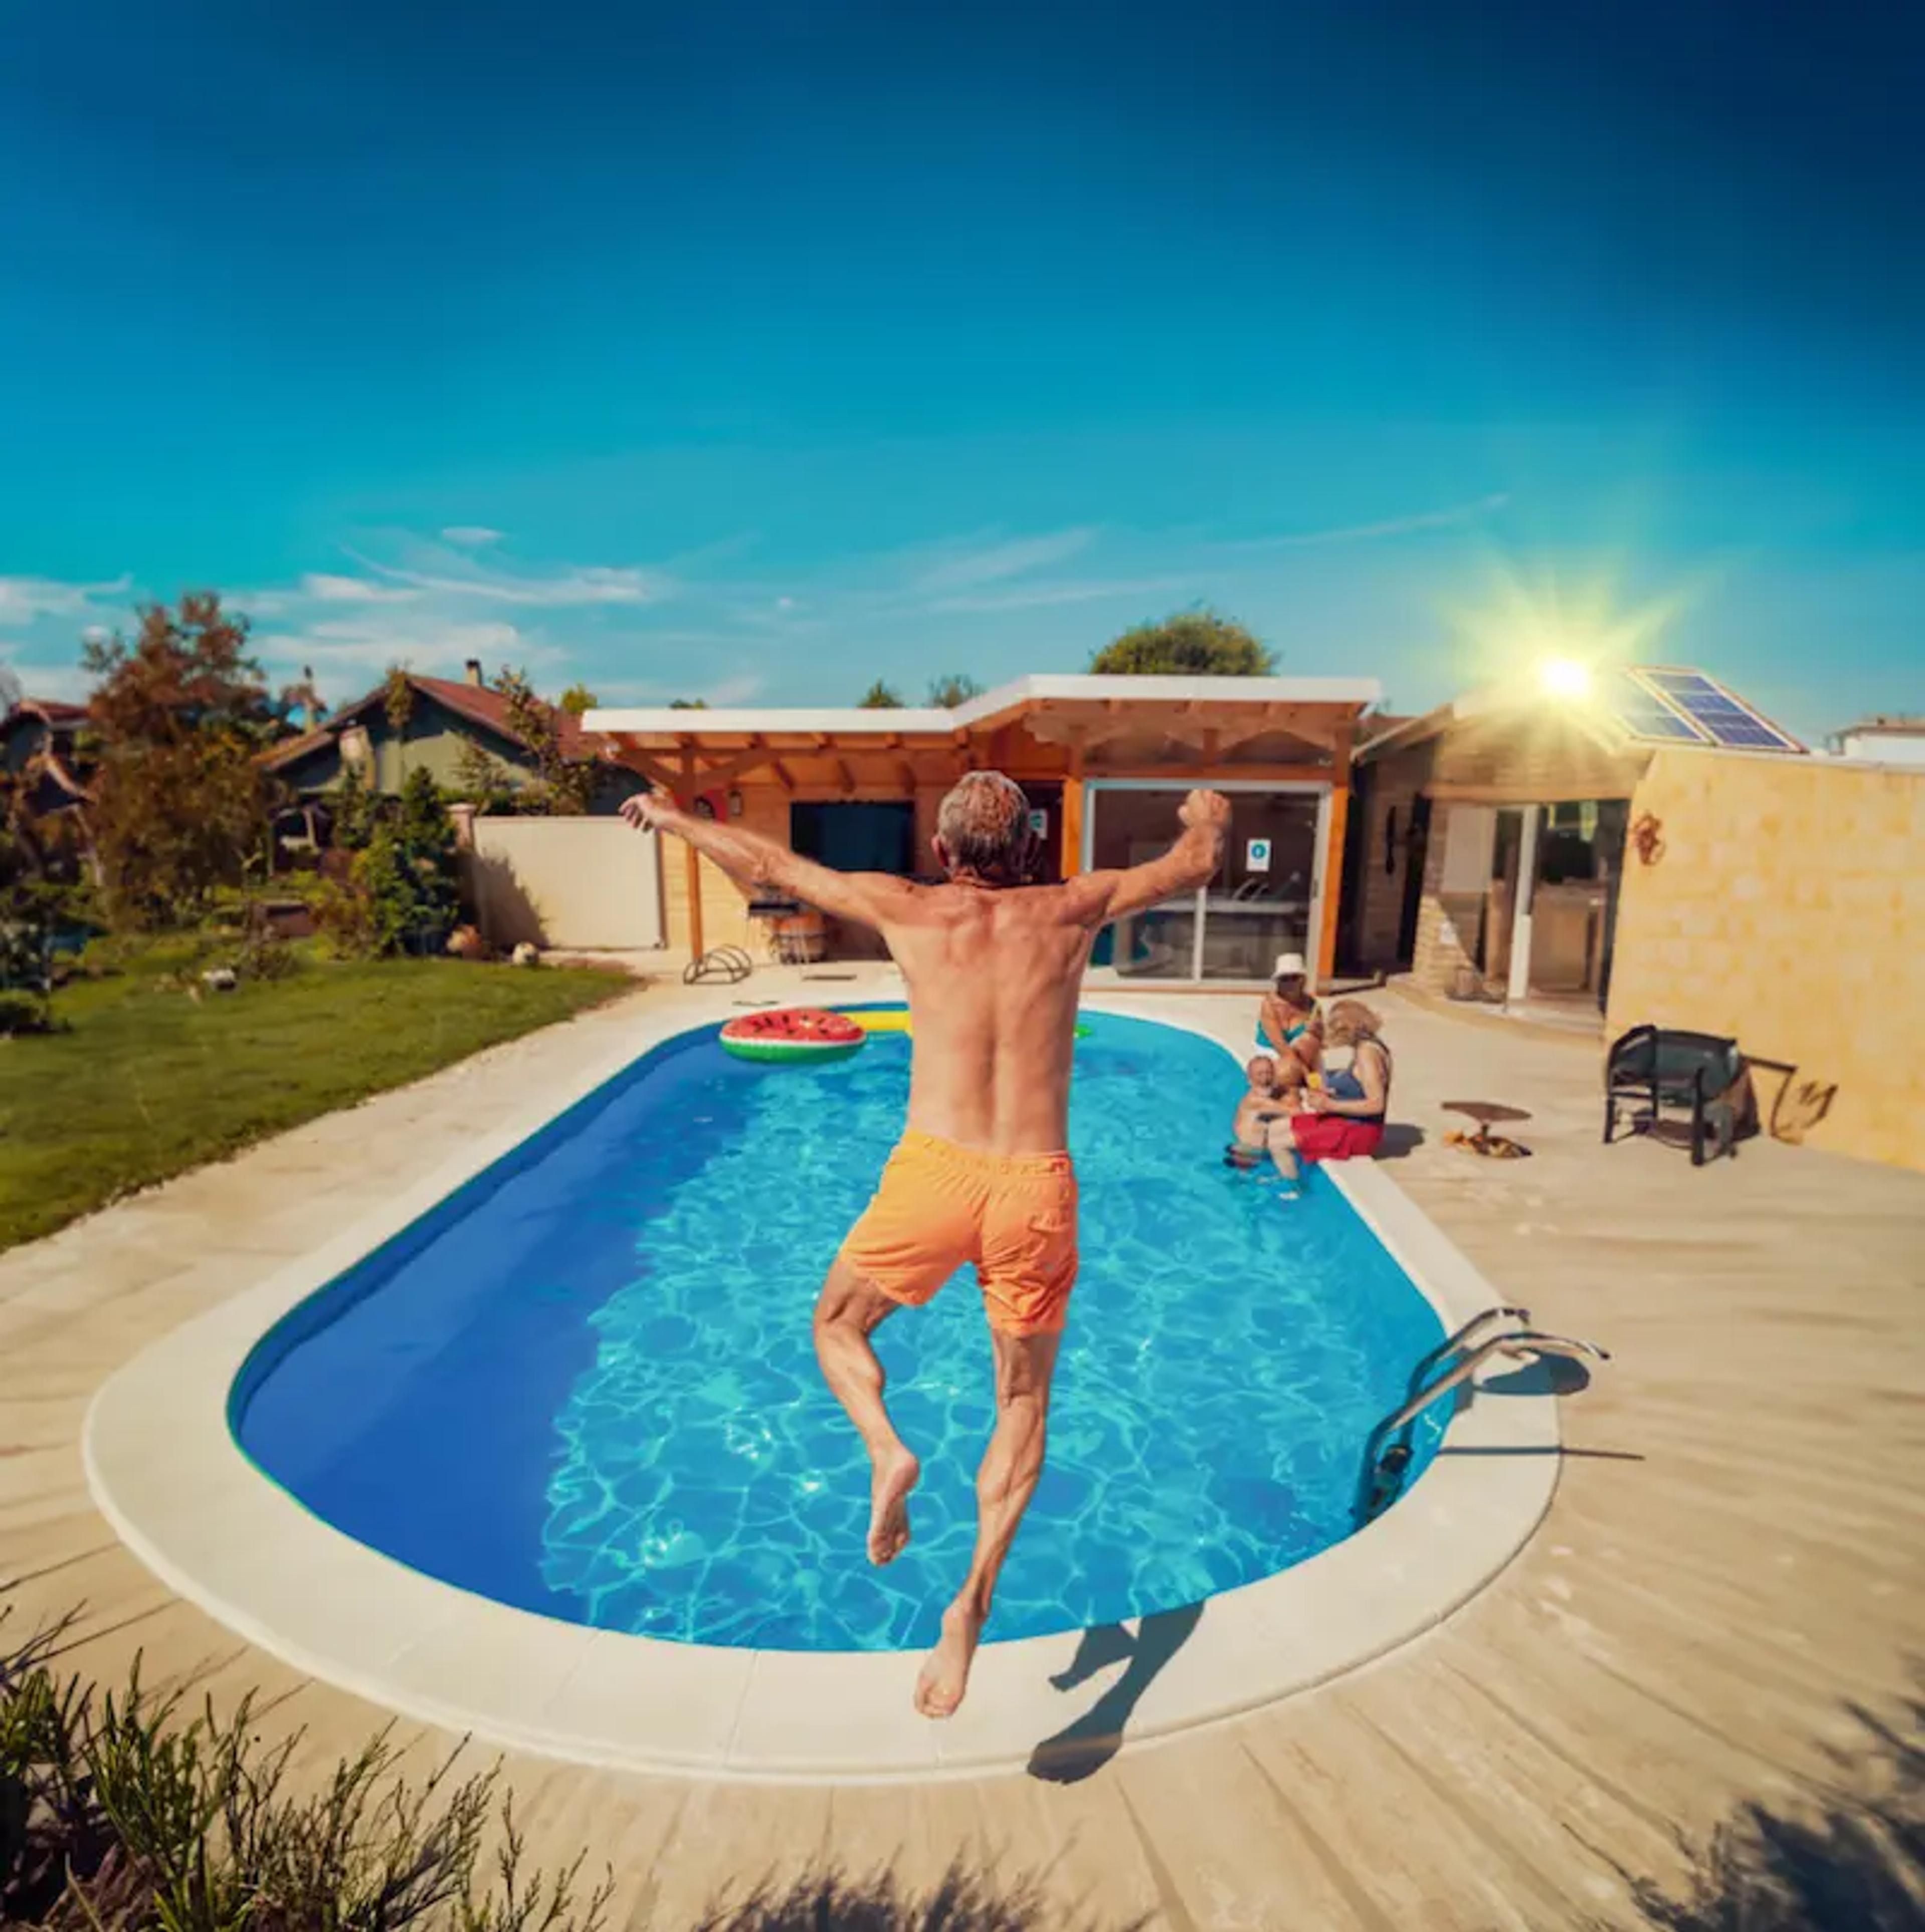 homme sautant dans une piscine avec sa maison équipée de panneaux solaires au loin